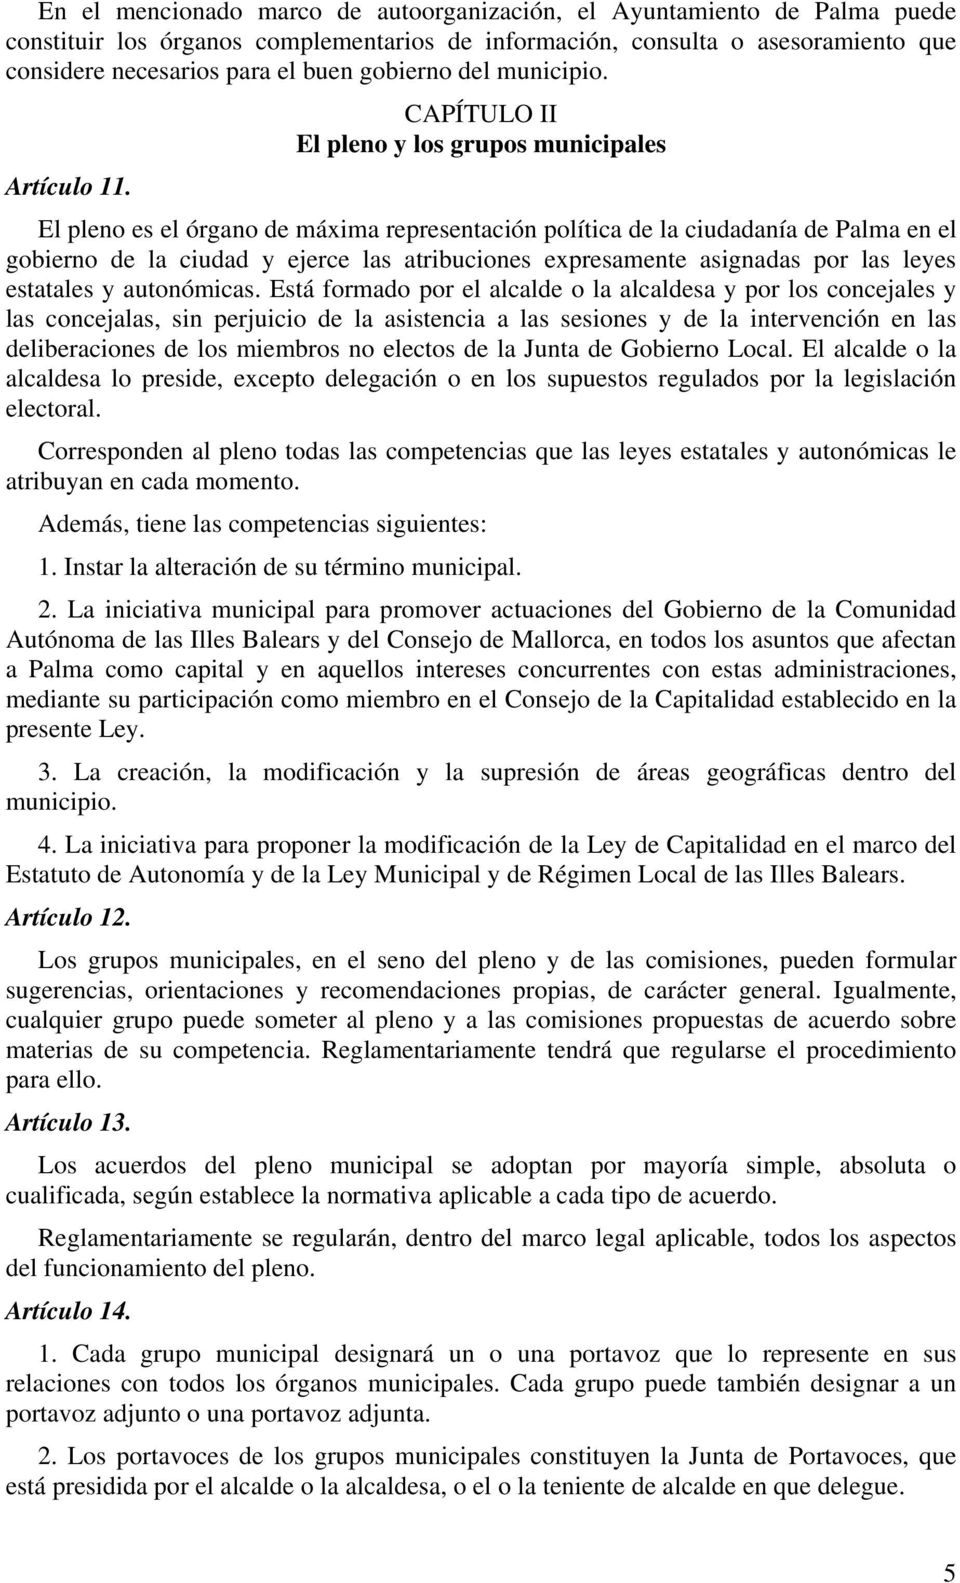 El pleno es el órgano de máxima representación política de la ciudadanía de Palma en el gobierno de la ciudad y ejerce las atribuciones expresamente asignadas por las leyes estatales y autonómicas.